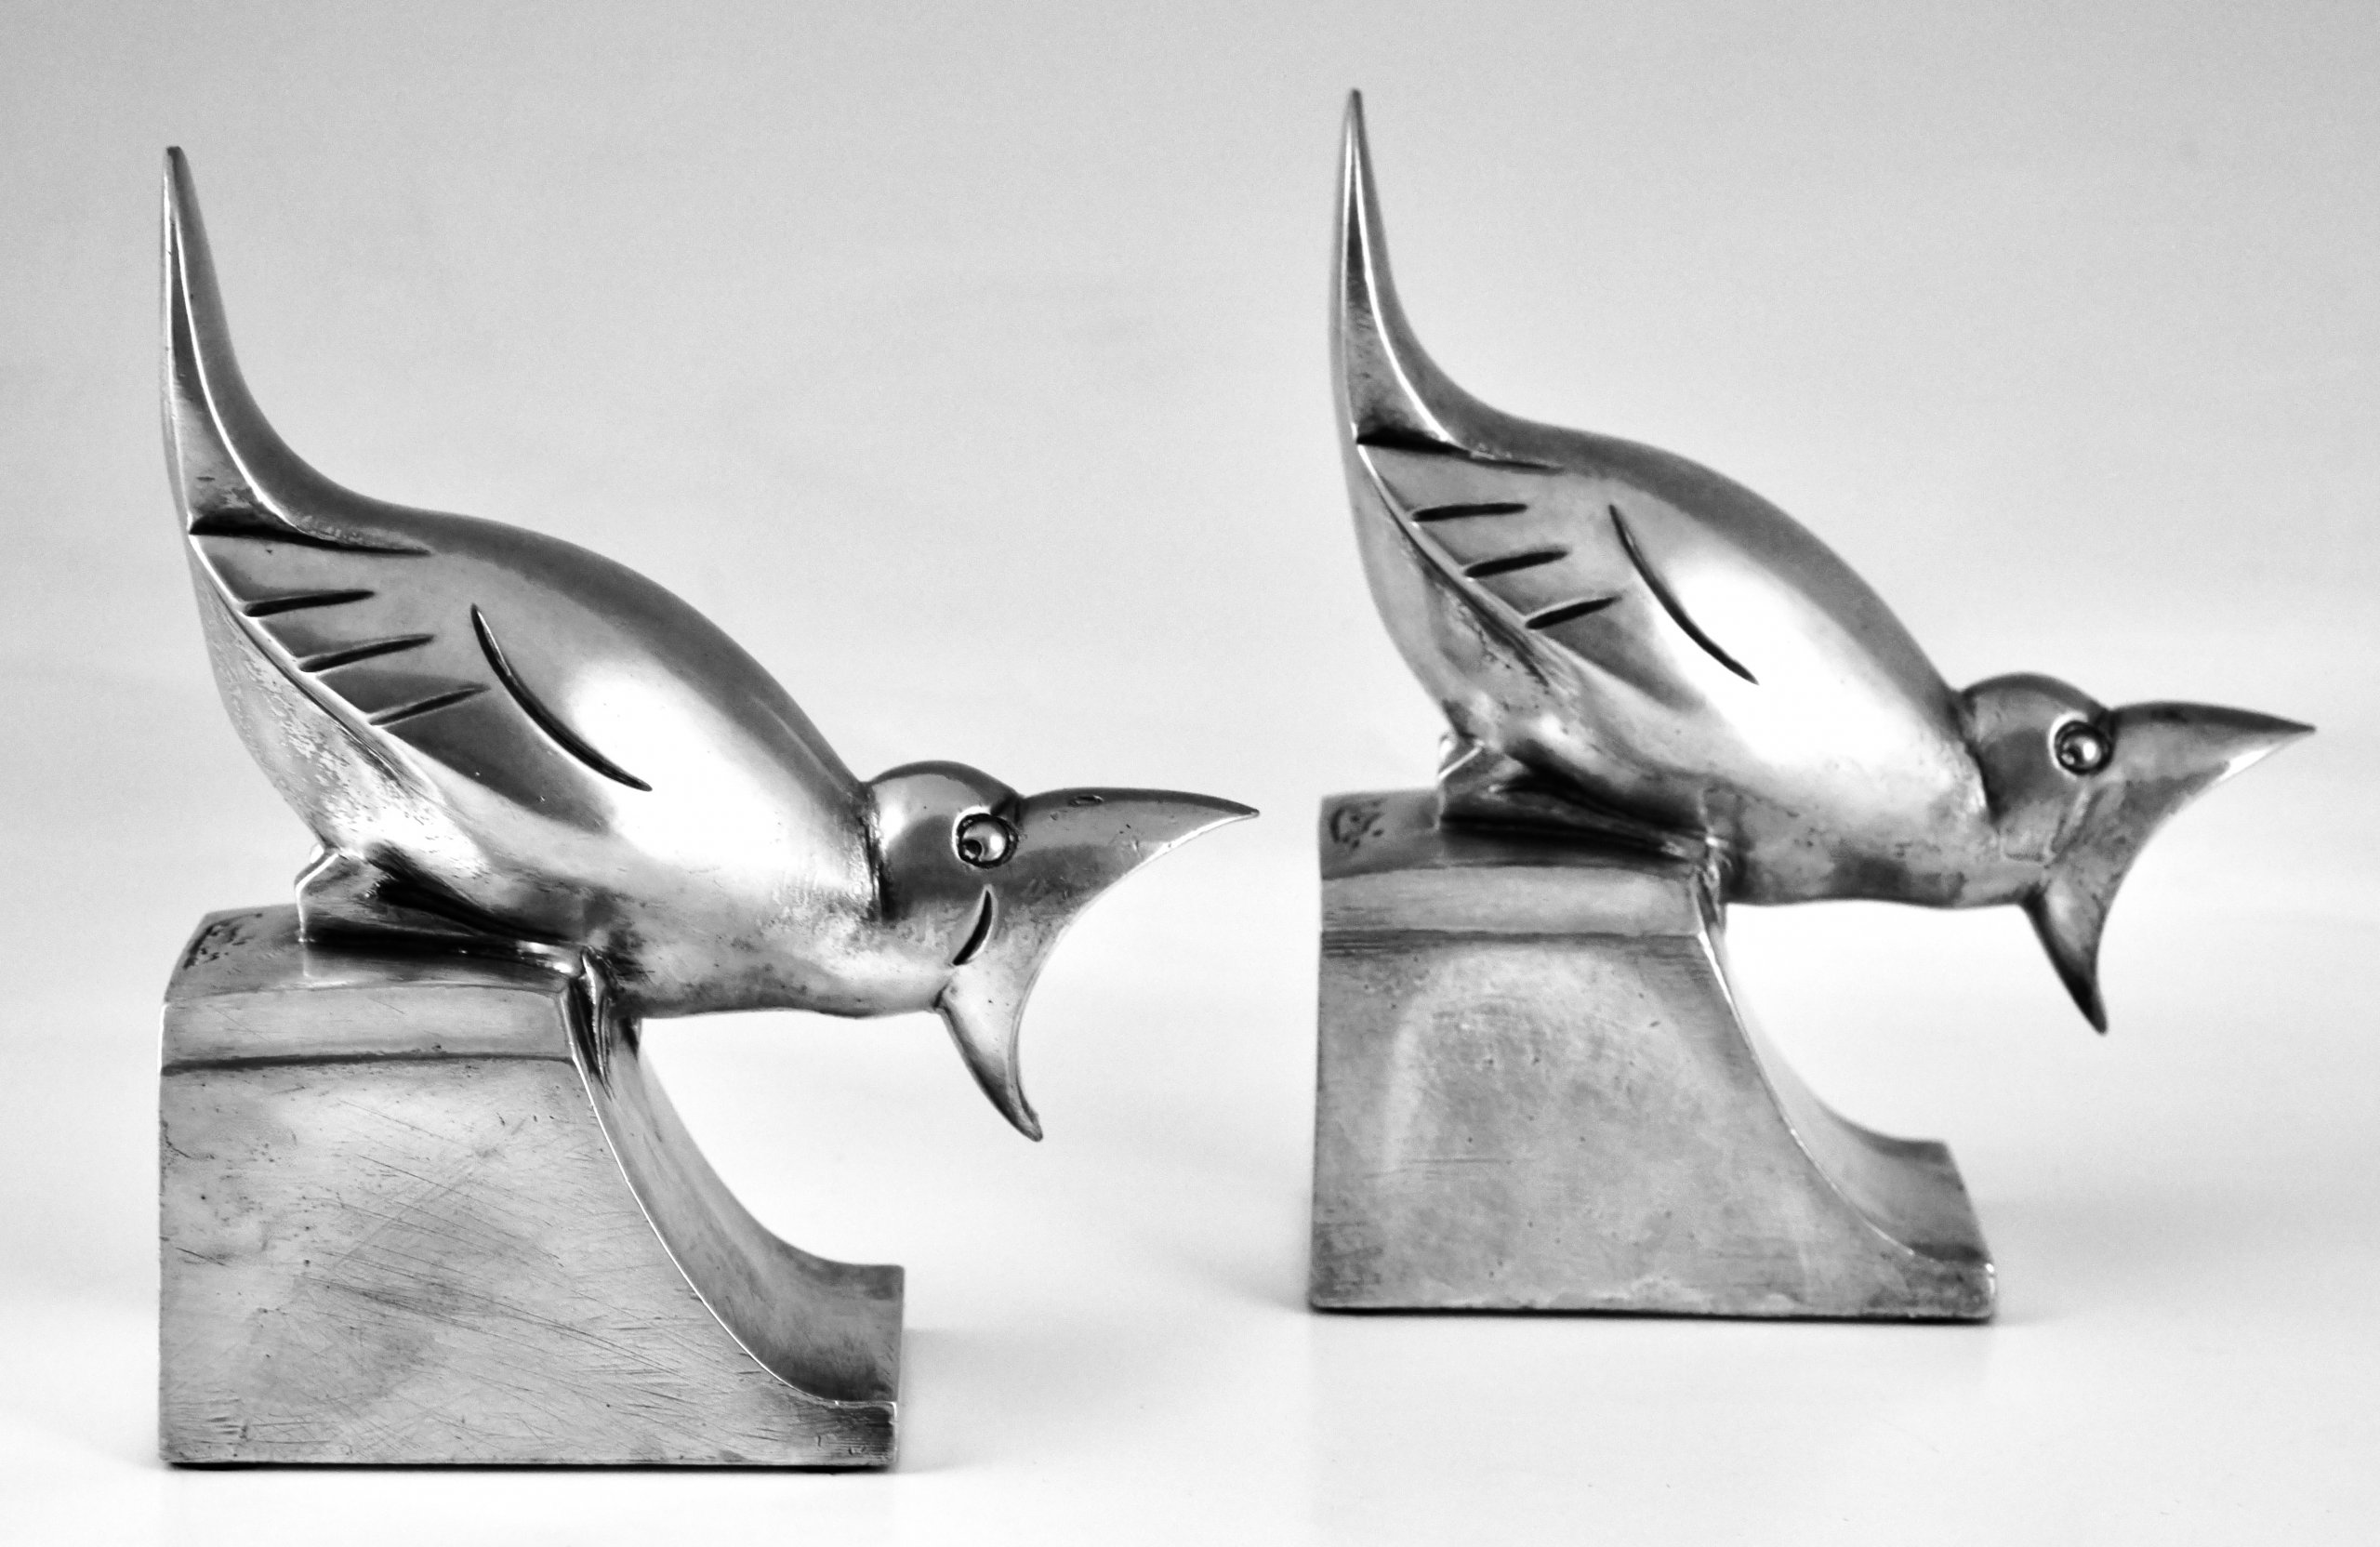 Art Deco bronze bird bookends.